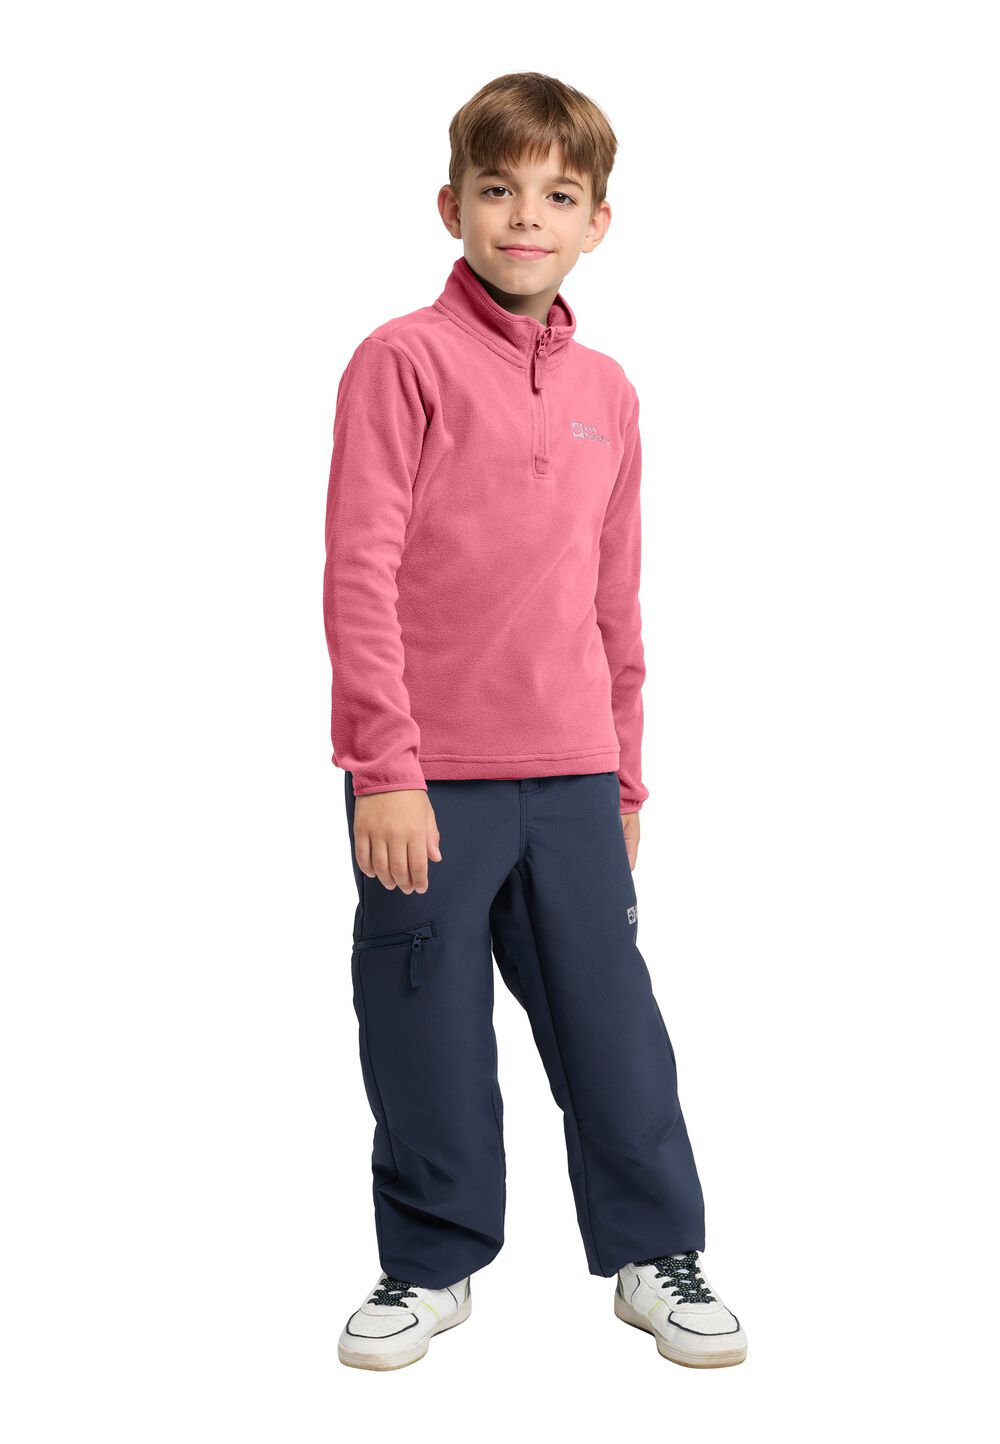 Jack Wolfskin Taunus Halfzip Kids Fleece trui Kinderen 152 soft pink soft pink